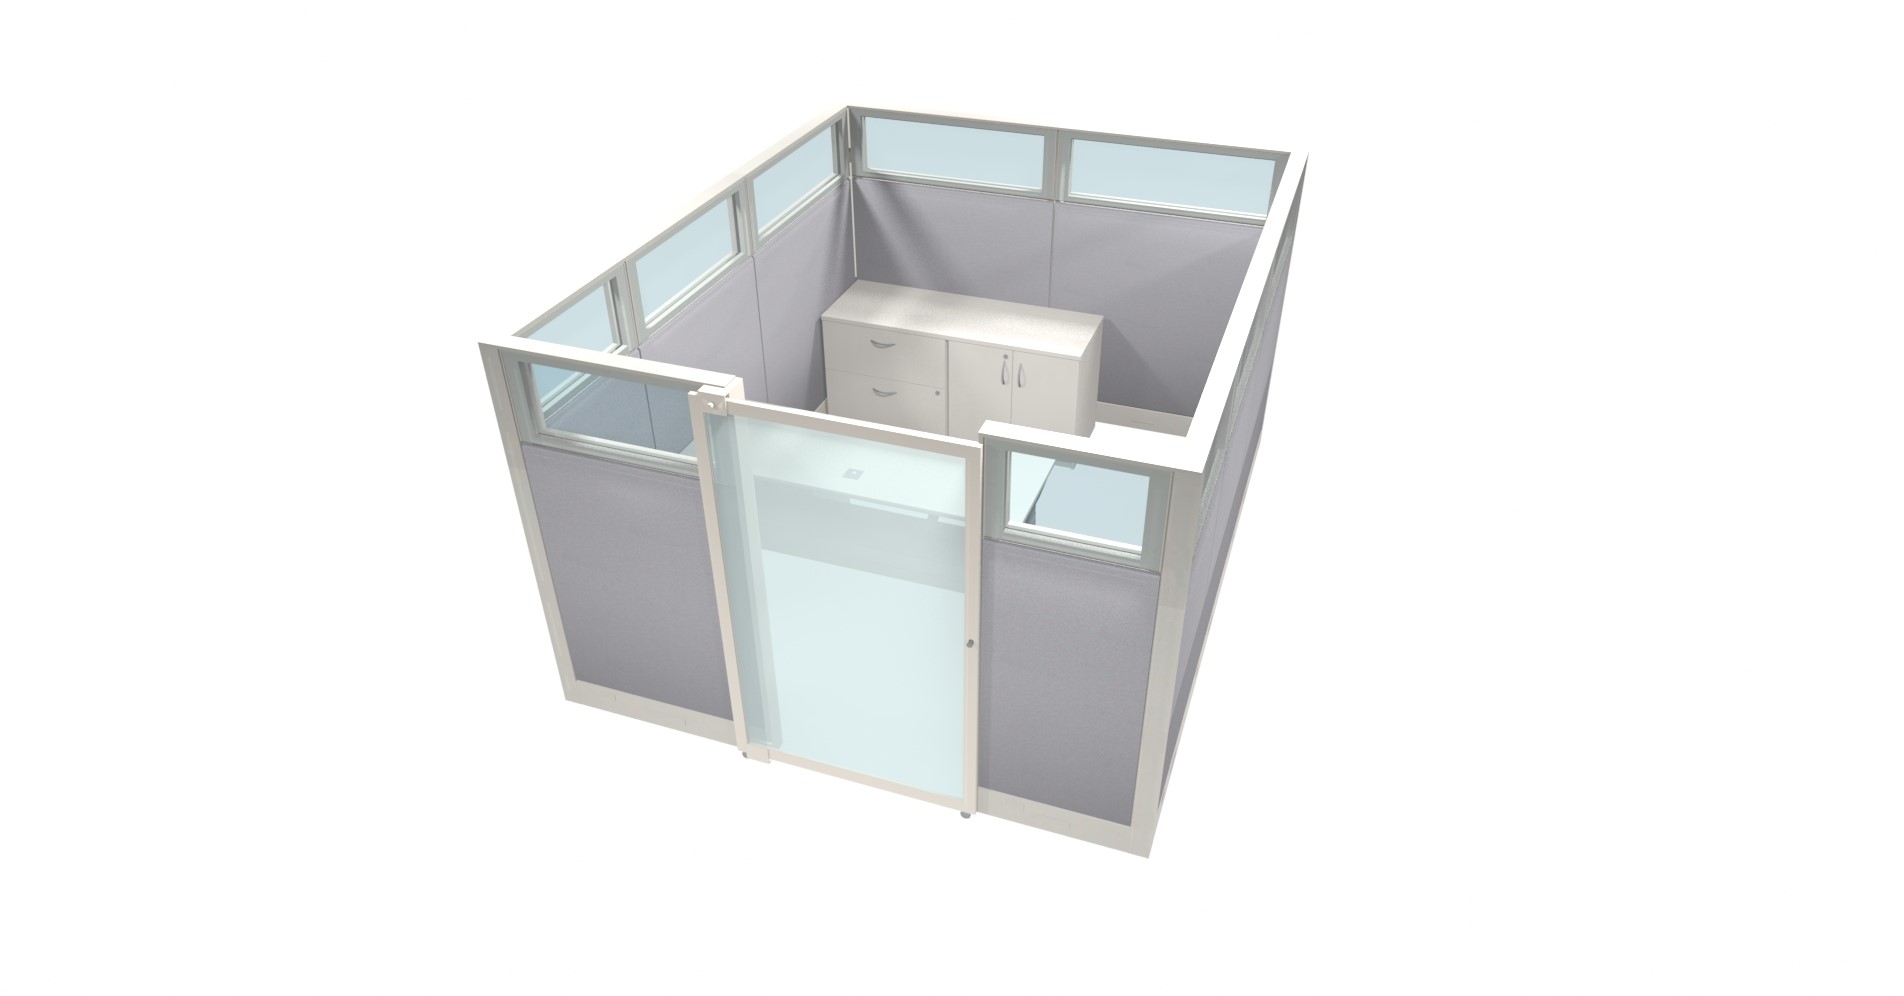 Tayco-Cosmo-5-Mikmaq-Office-Furniture.jpg